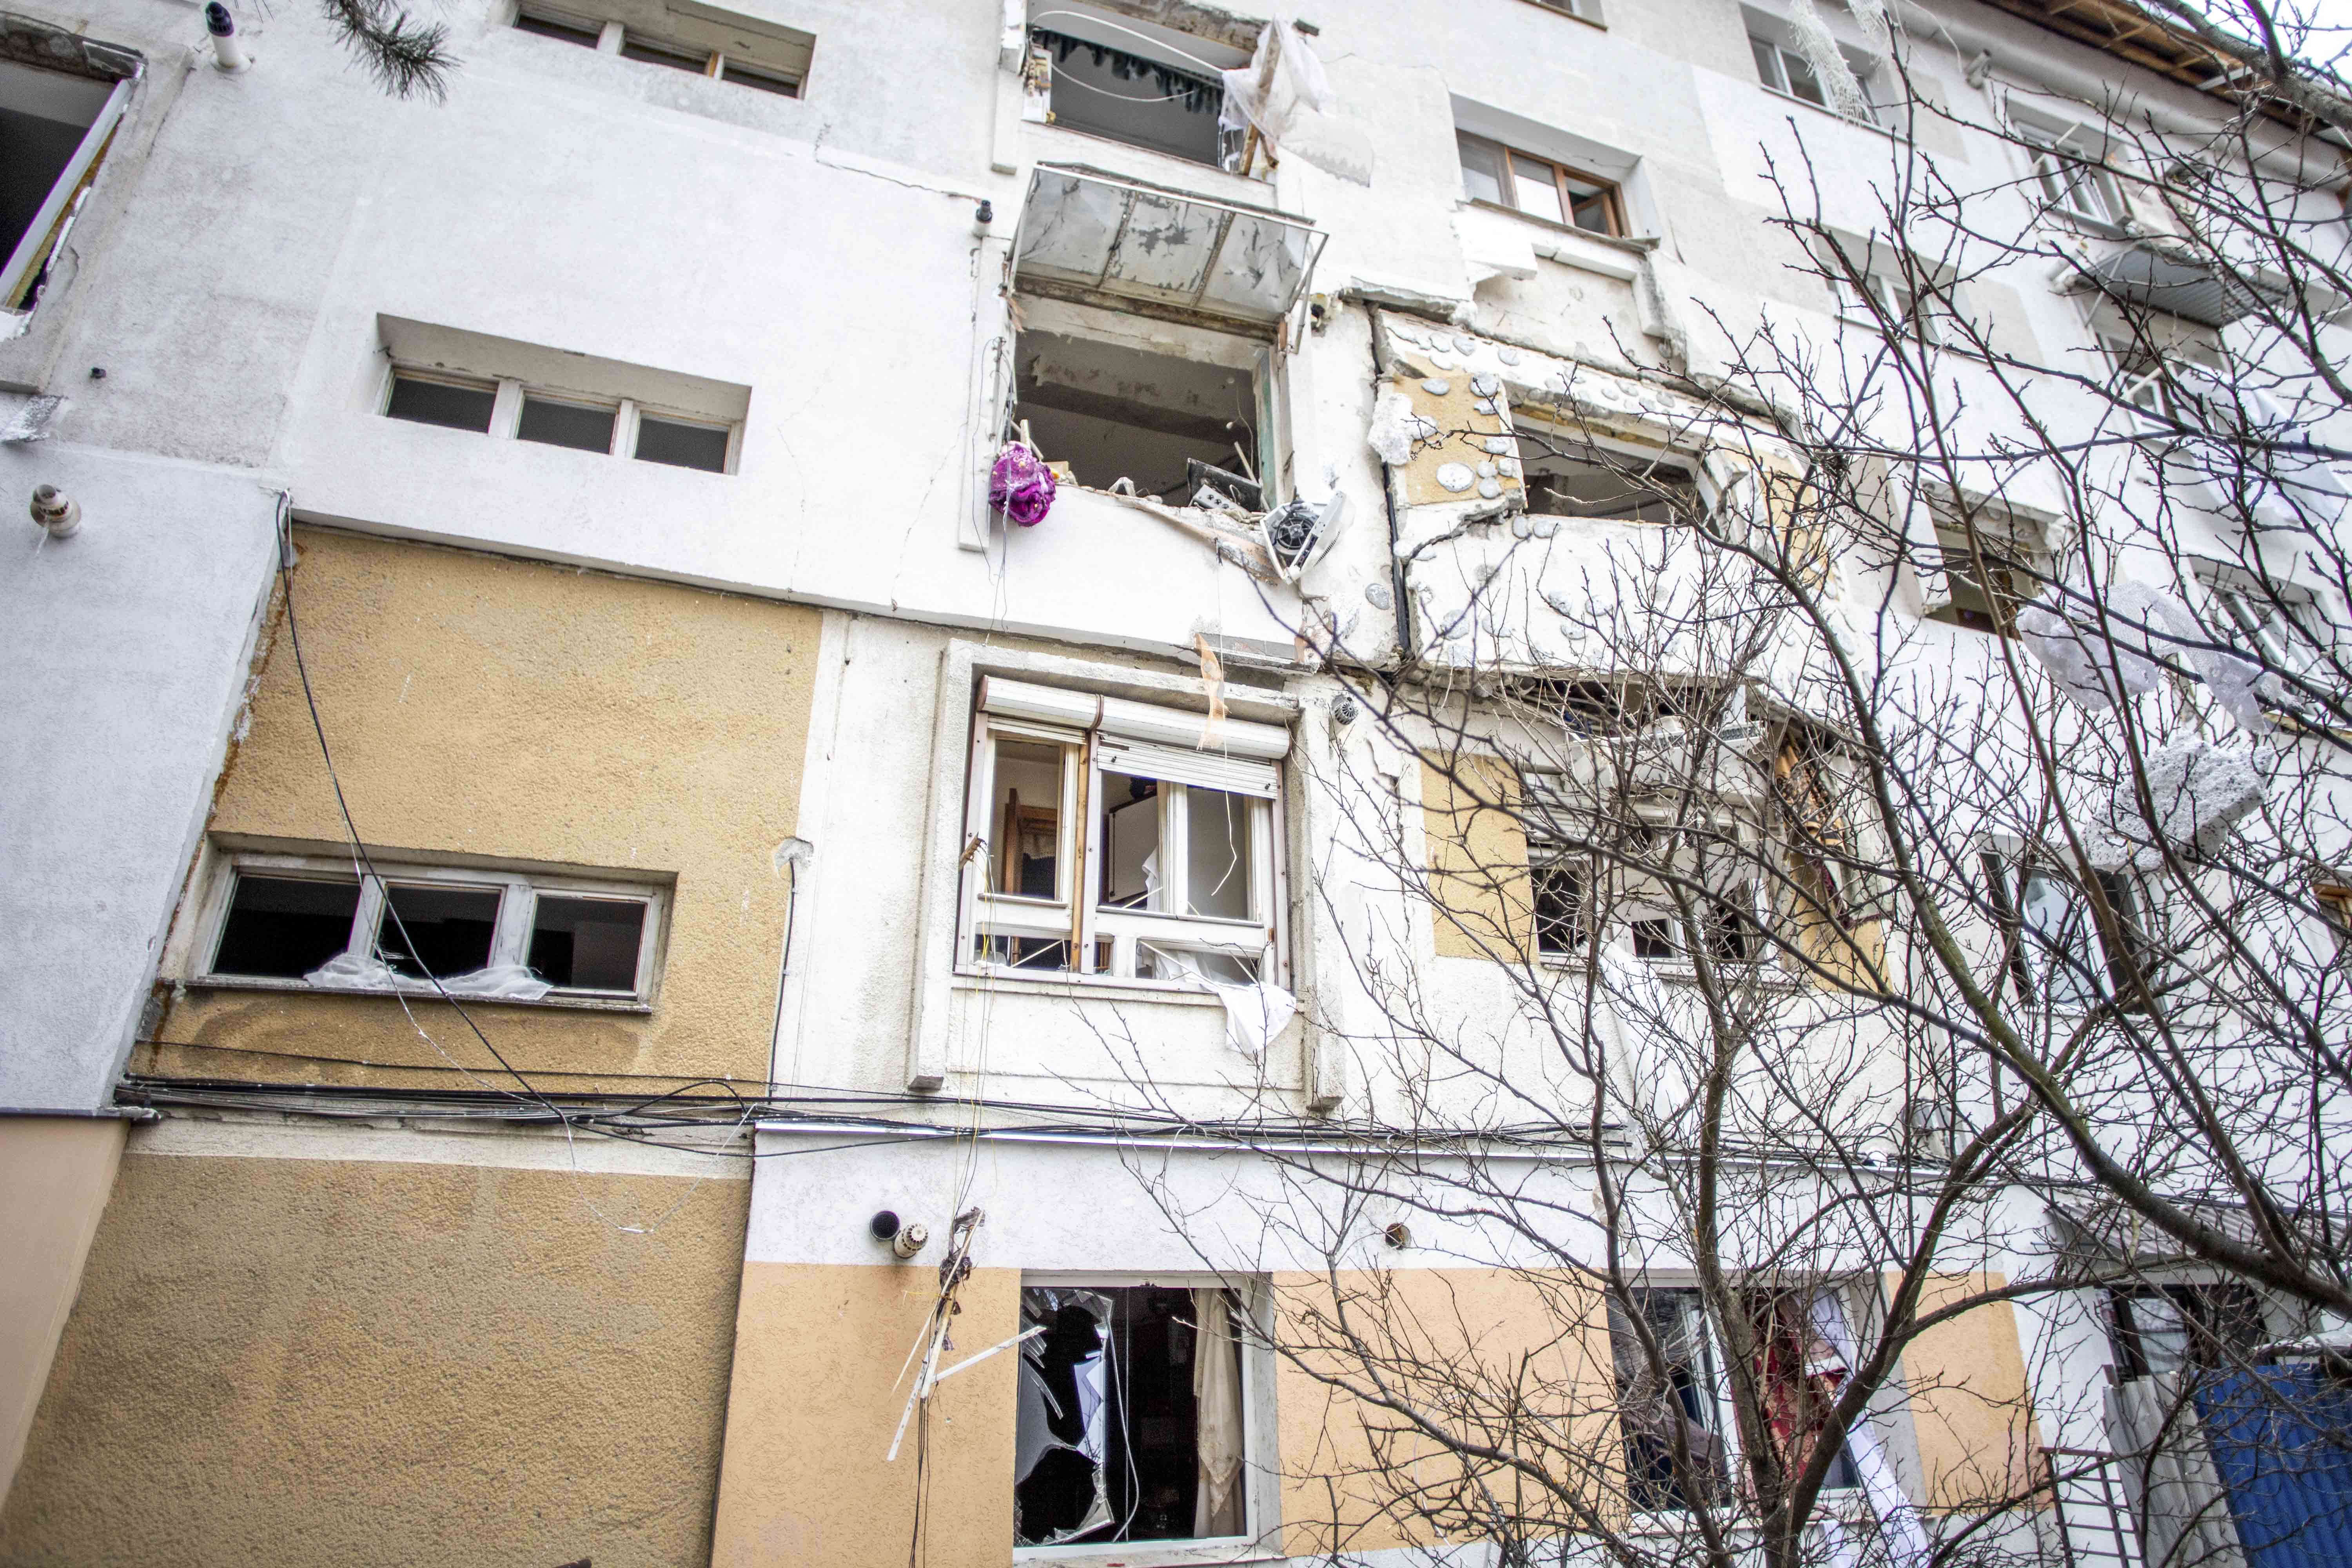 Deces după explozia produsă într-un bloc din Suceava. Bărbatul care a fost aruncat printr-o fereastră a murit | GALERIE FOTO - Imaginea 6